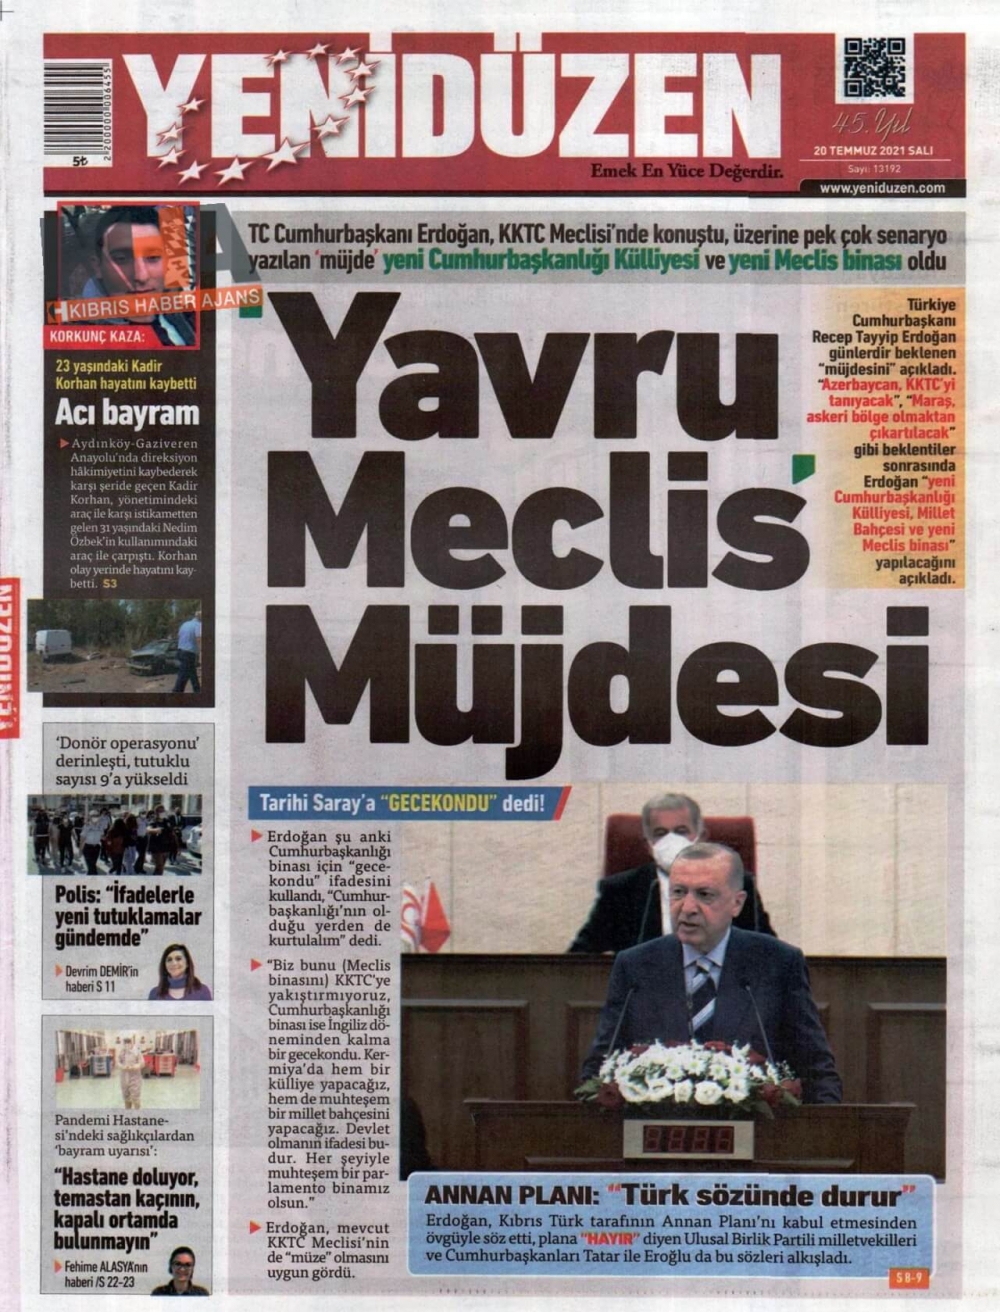 KKTC'de basılı gazeteler Erdoğan'ın Müjdesini nasıl gördü? galerisi resim 9